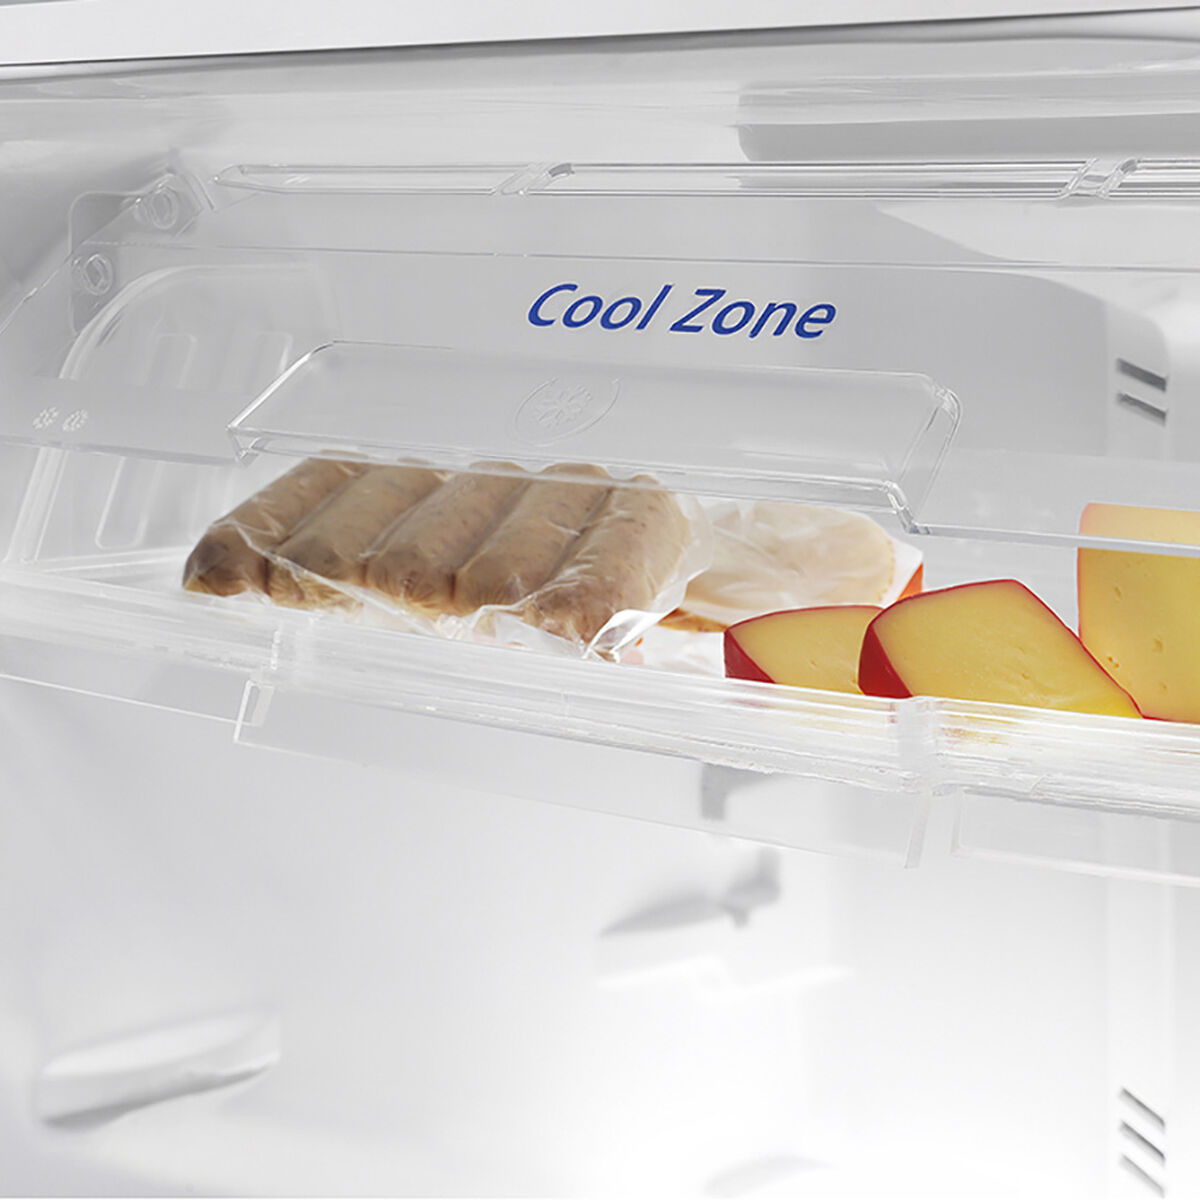 Refrigerador No Frost Mabe RMP410FZUU 390 lts.